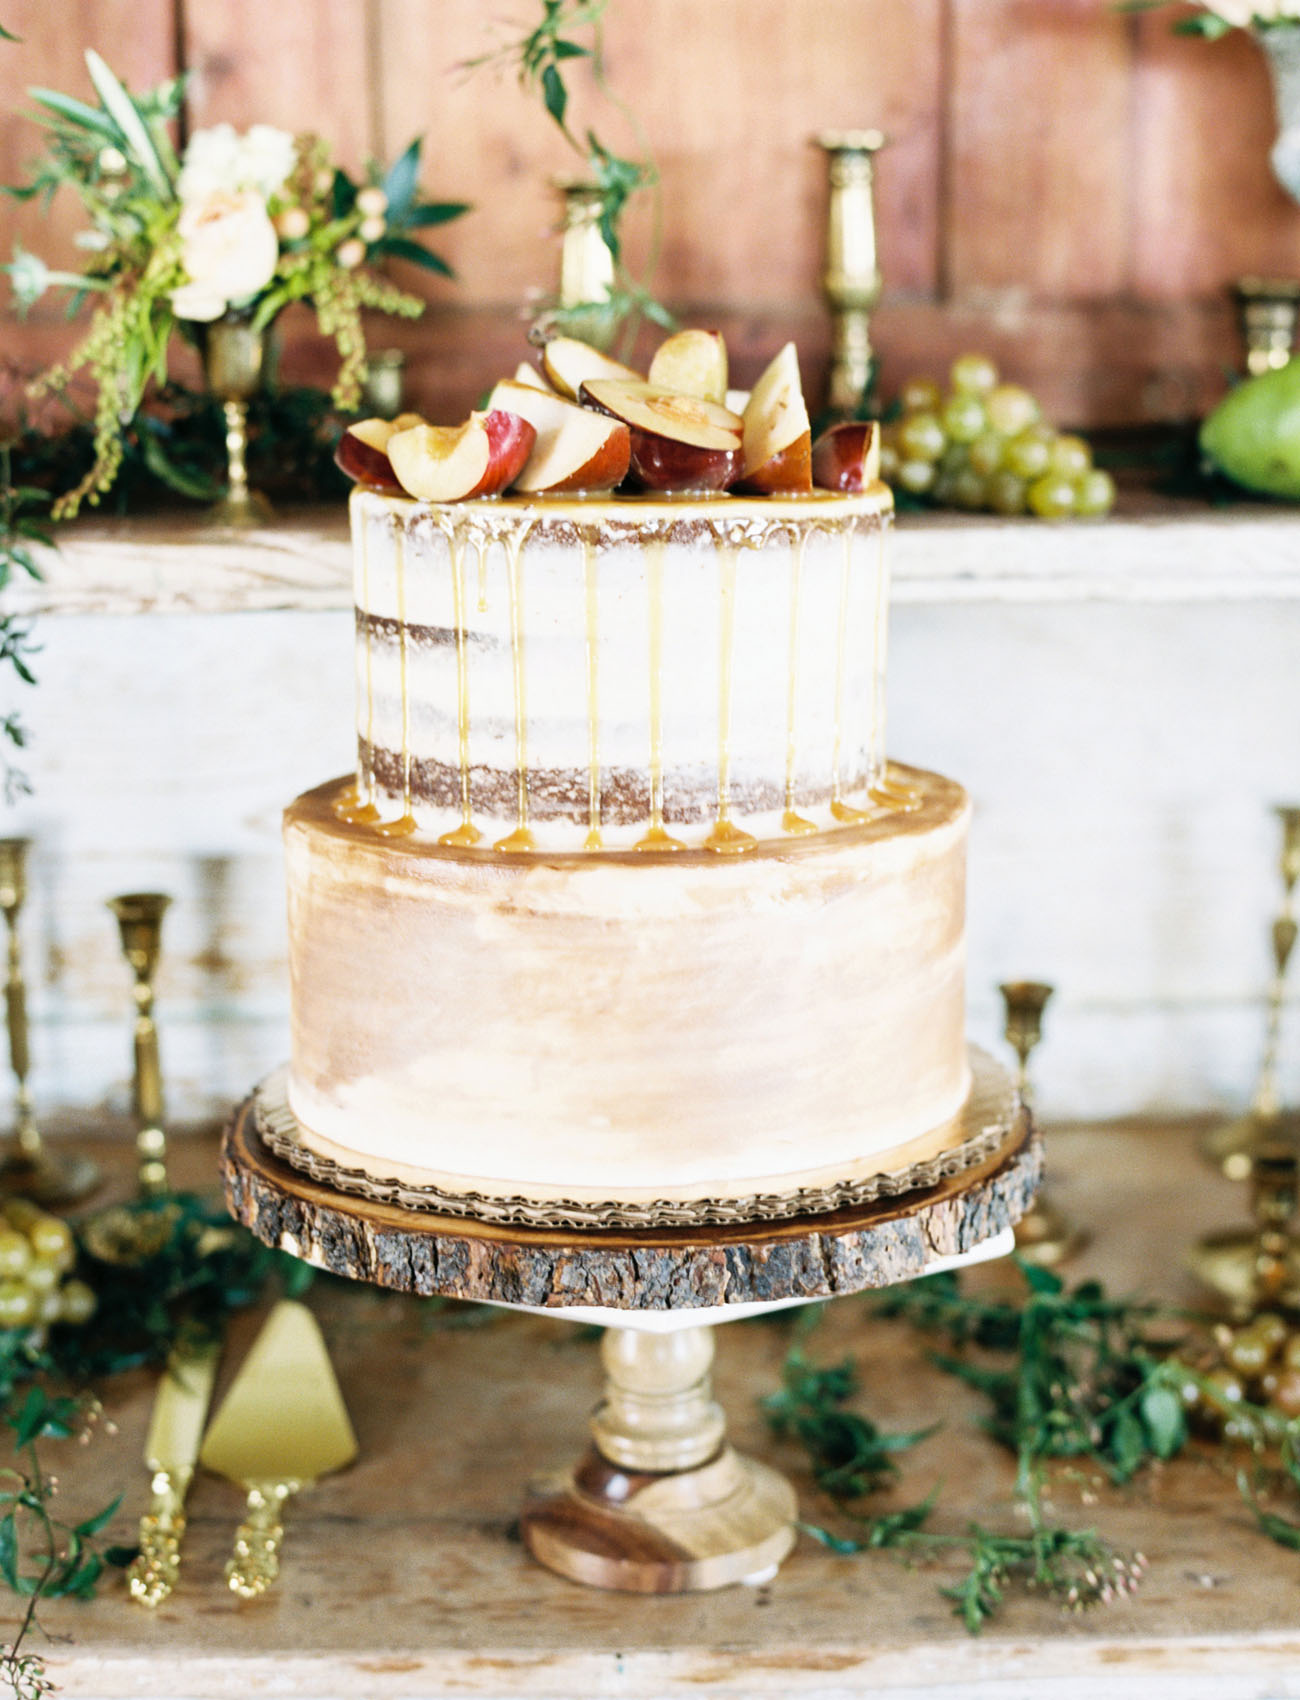 Os naked cakes continuam a ser uma opção de bolos de casamento muito procurada pelos noivos | Créditos: Awake Photography